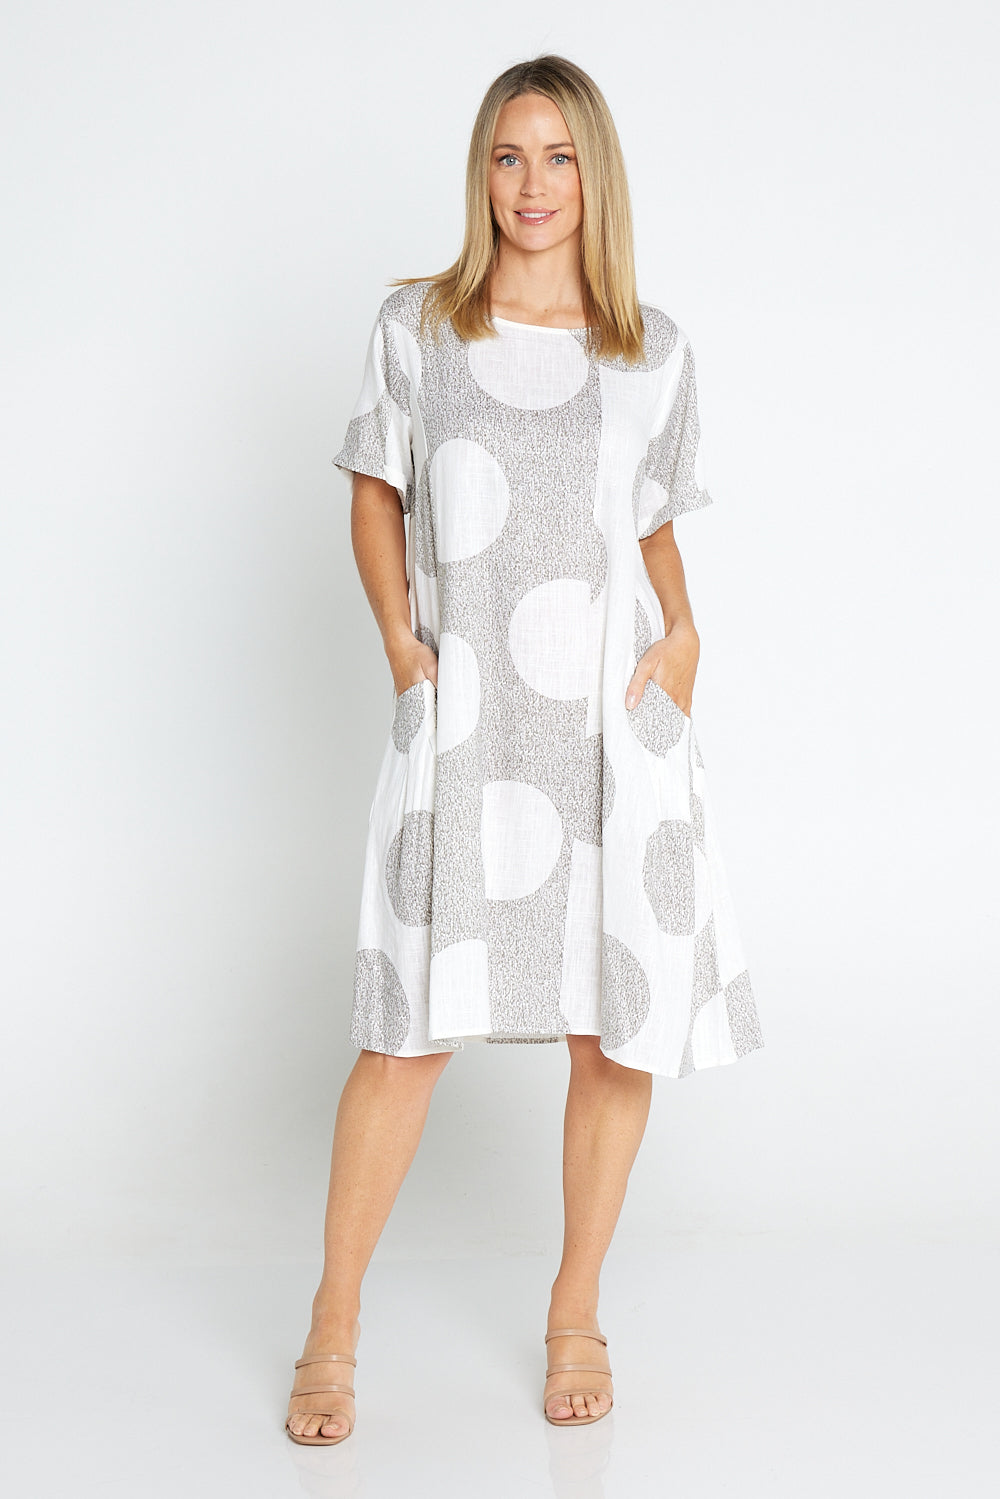 Image of Amayah Dress - Brown/White Circles